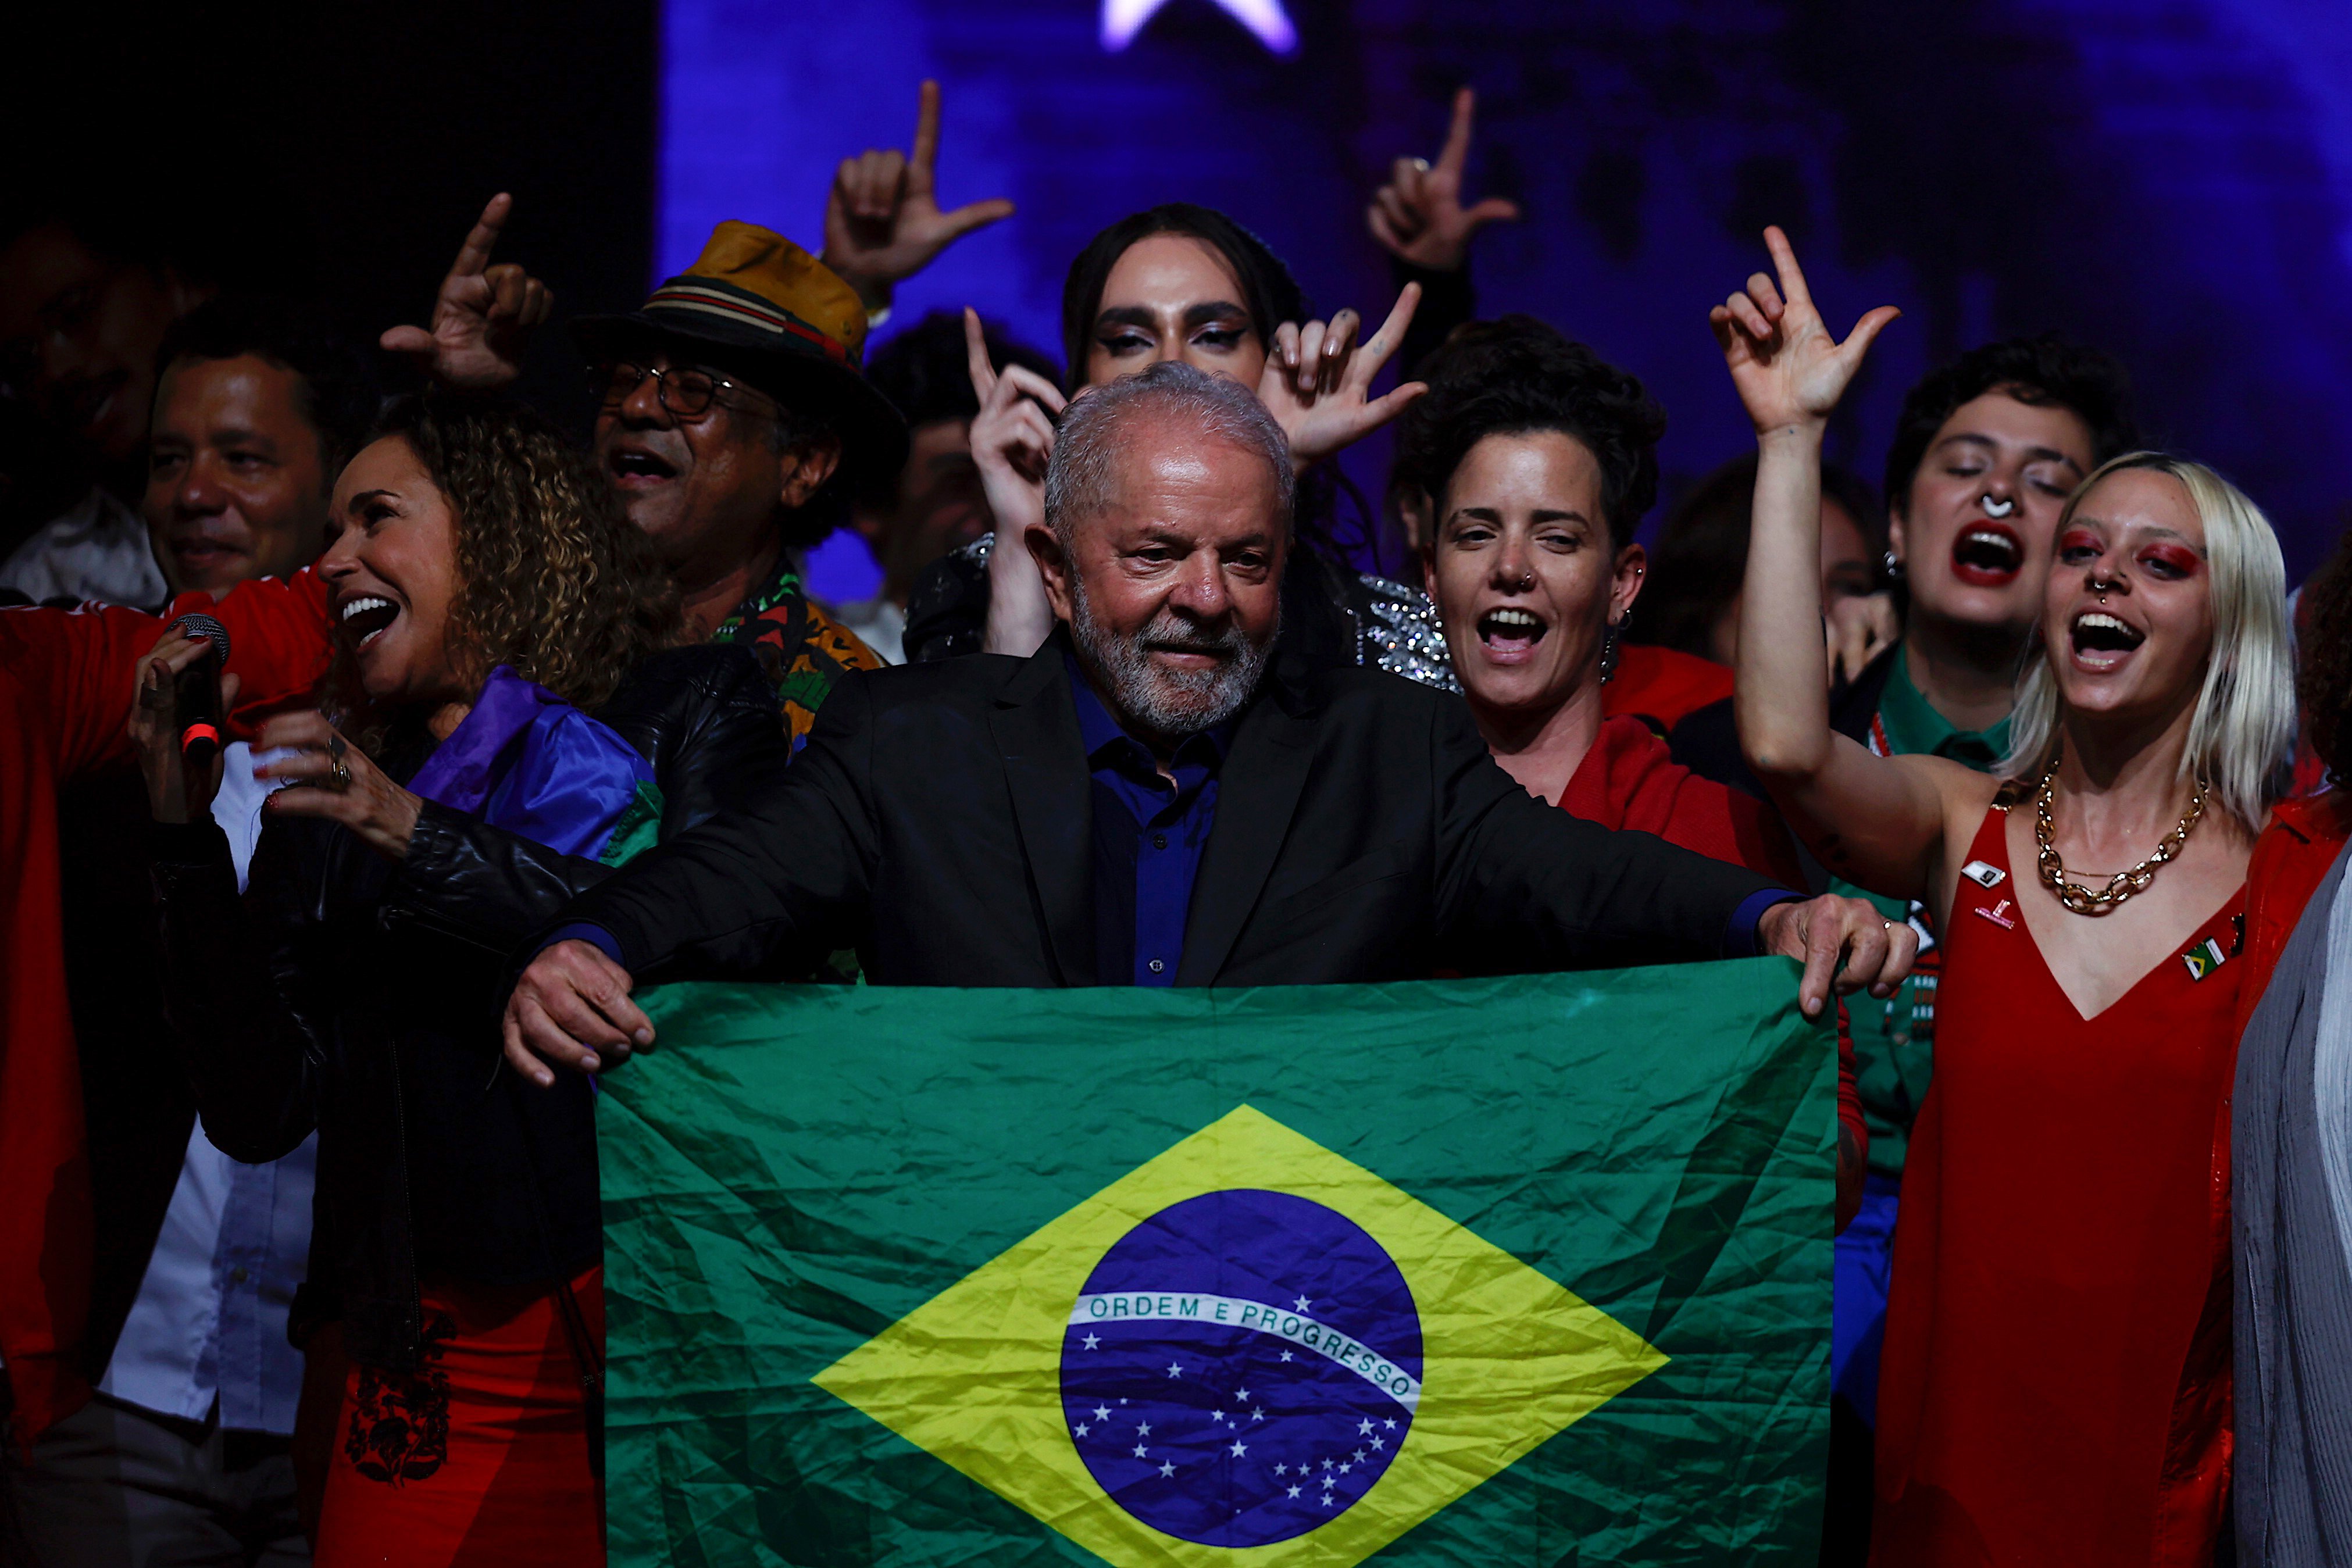 Elecciones Brasil 2022: Lula da Silva contra Jair Bolsonaro para llegar a la presidencia